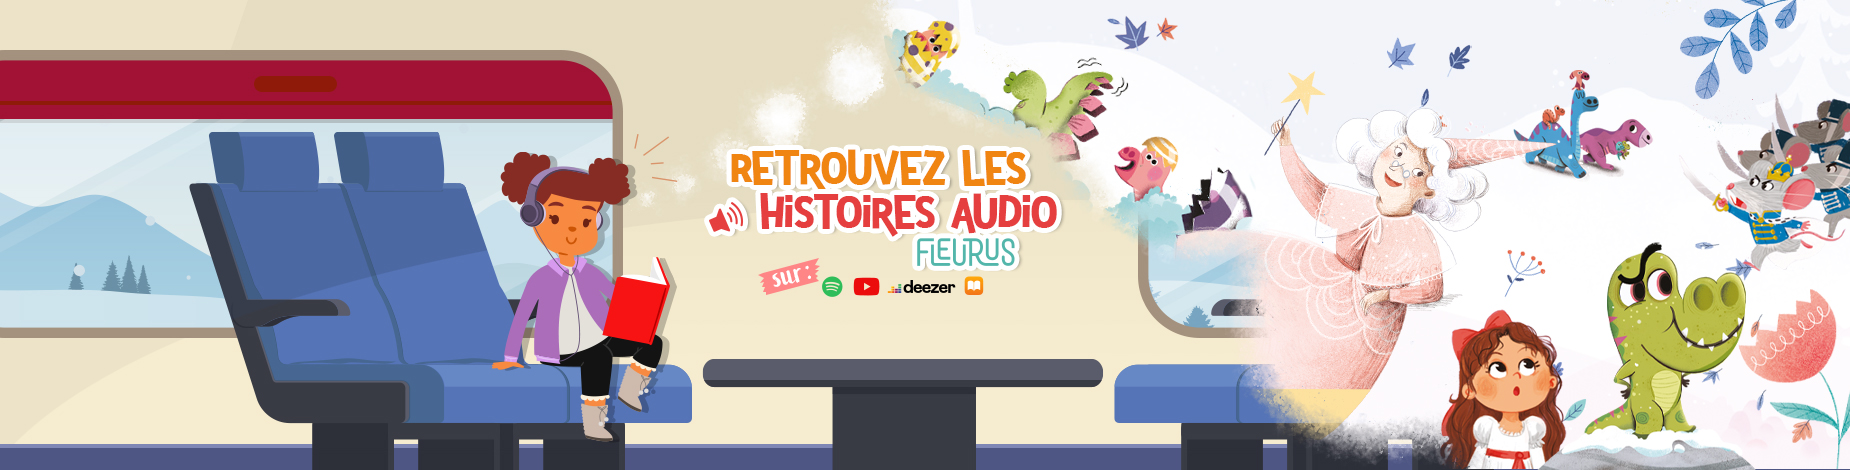 Le Petit Prince pour les enfants - Livre audio - Histoire du soir pour  enfants pour s'endormir 